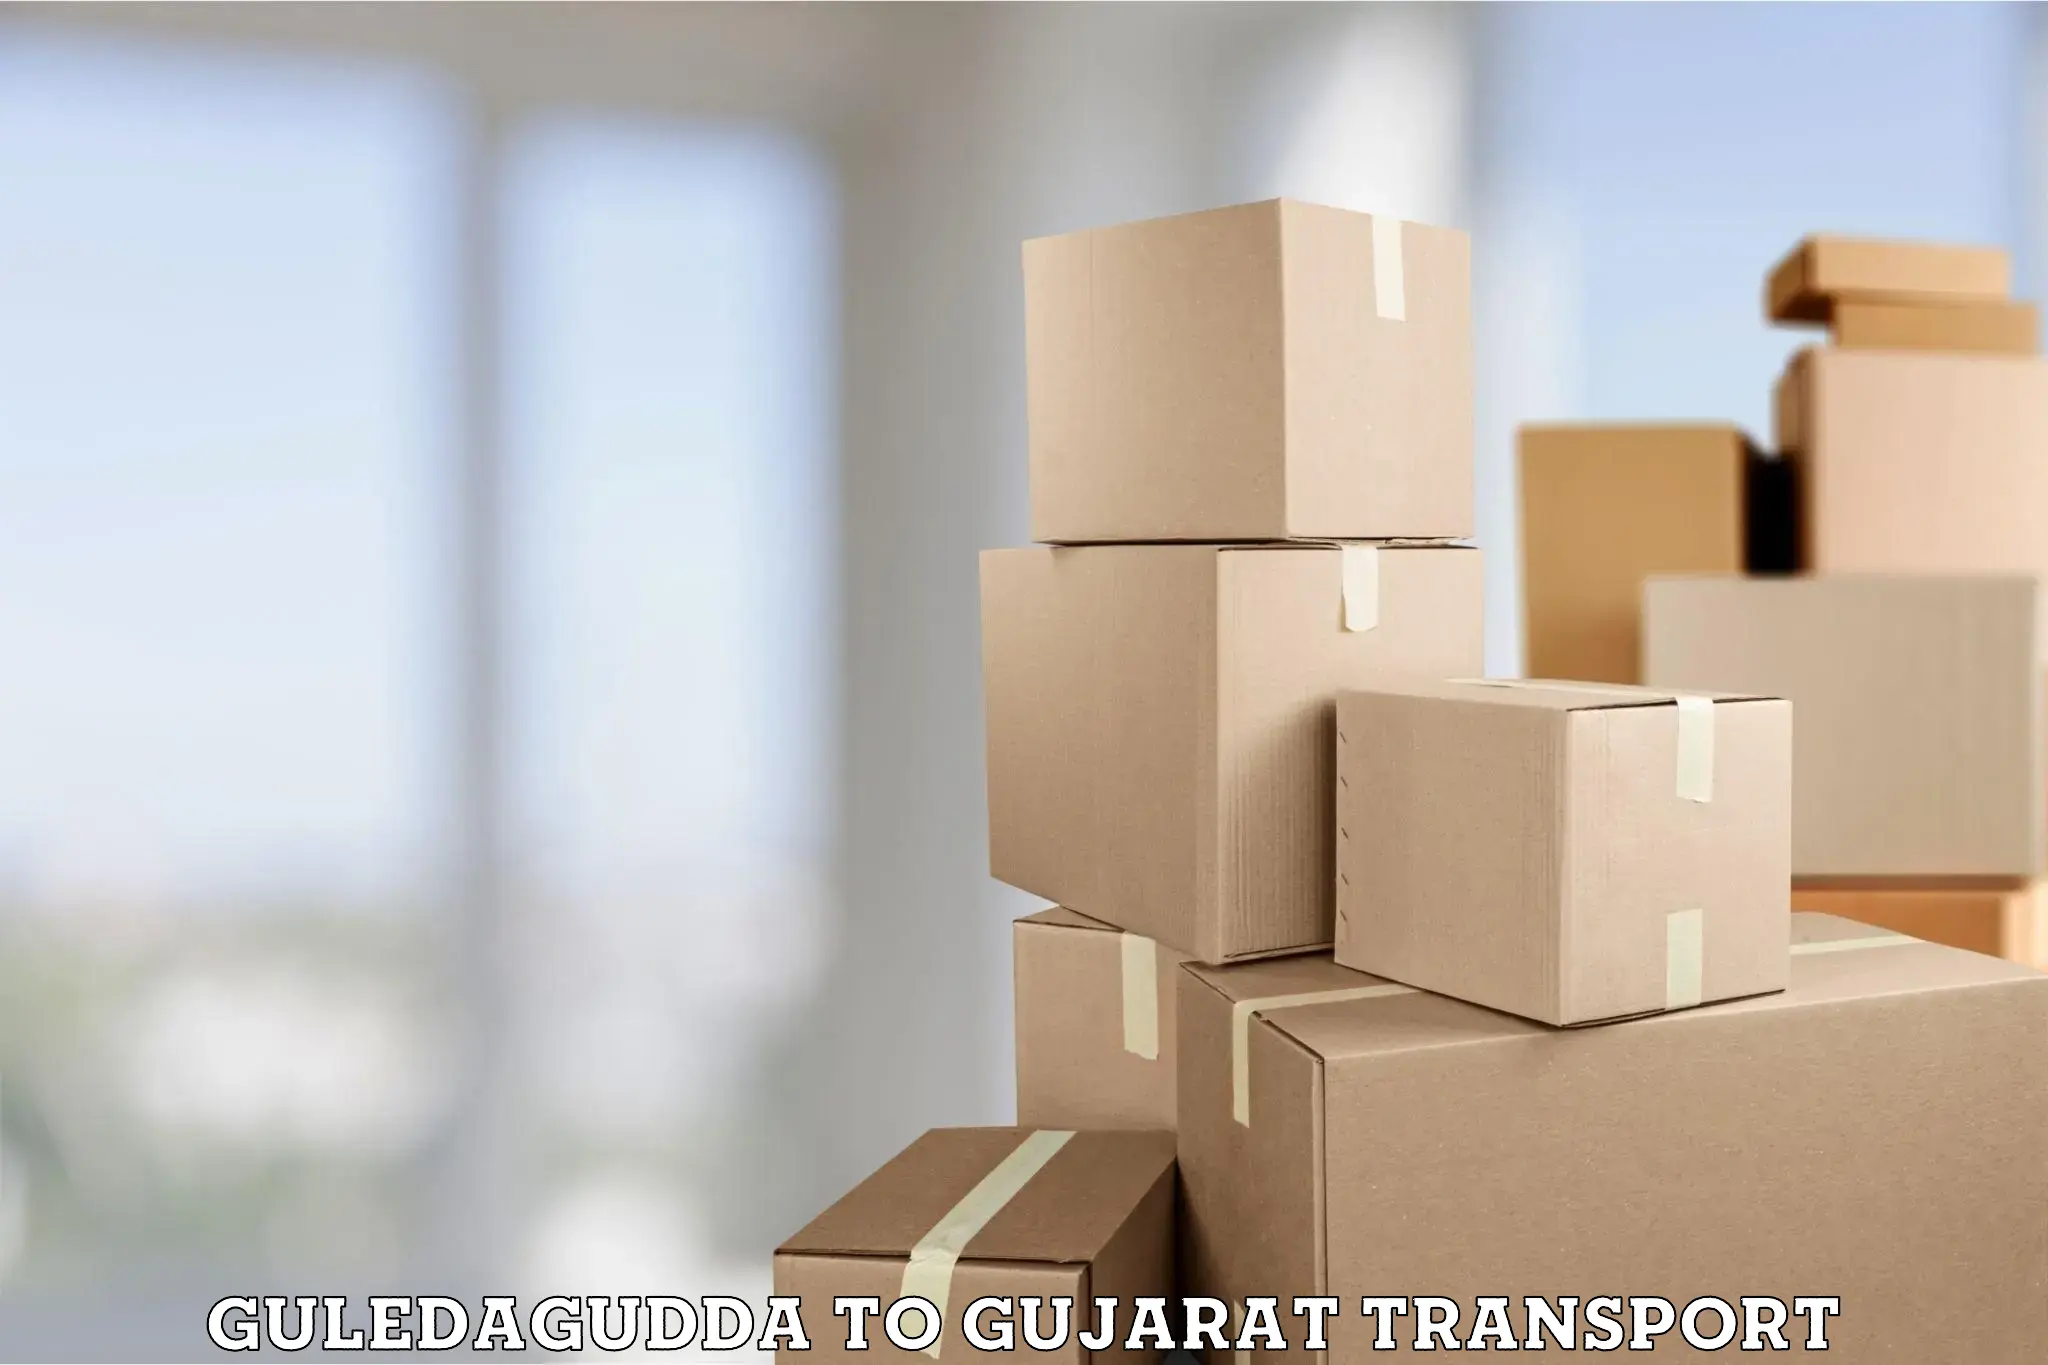 Cargo transportation services Guledagudda to Vadnagar